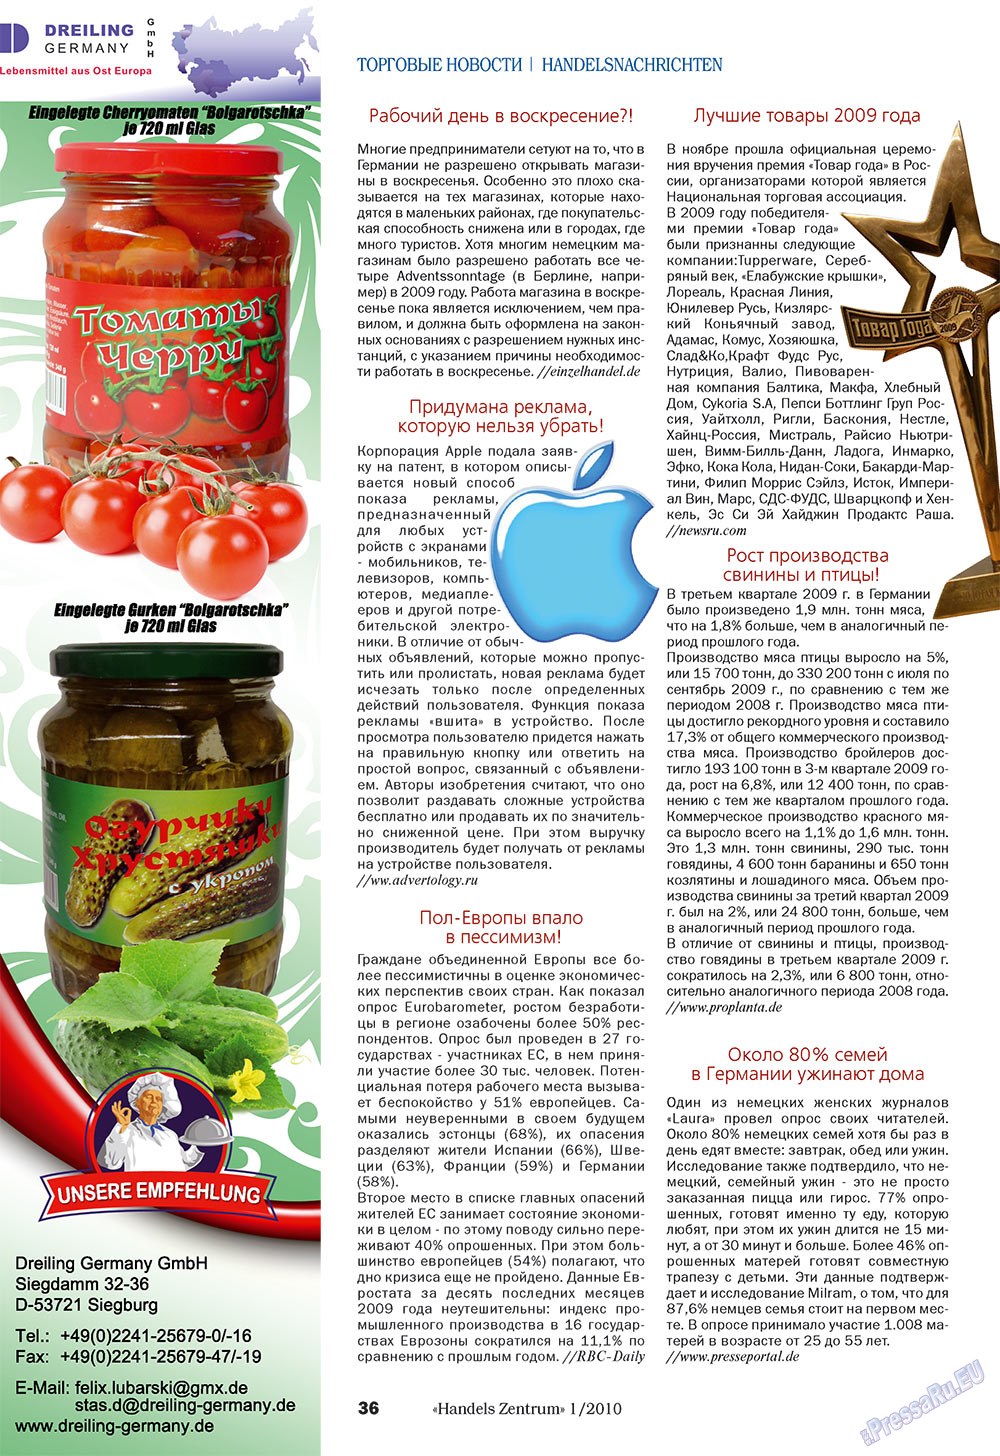 Handels Zentrum (Zeitschrift). 2010 Jahr, Ausgabe 1, Seite 36